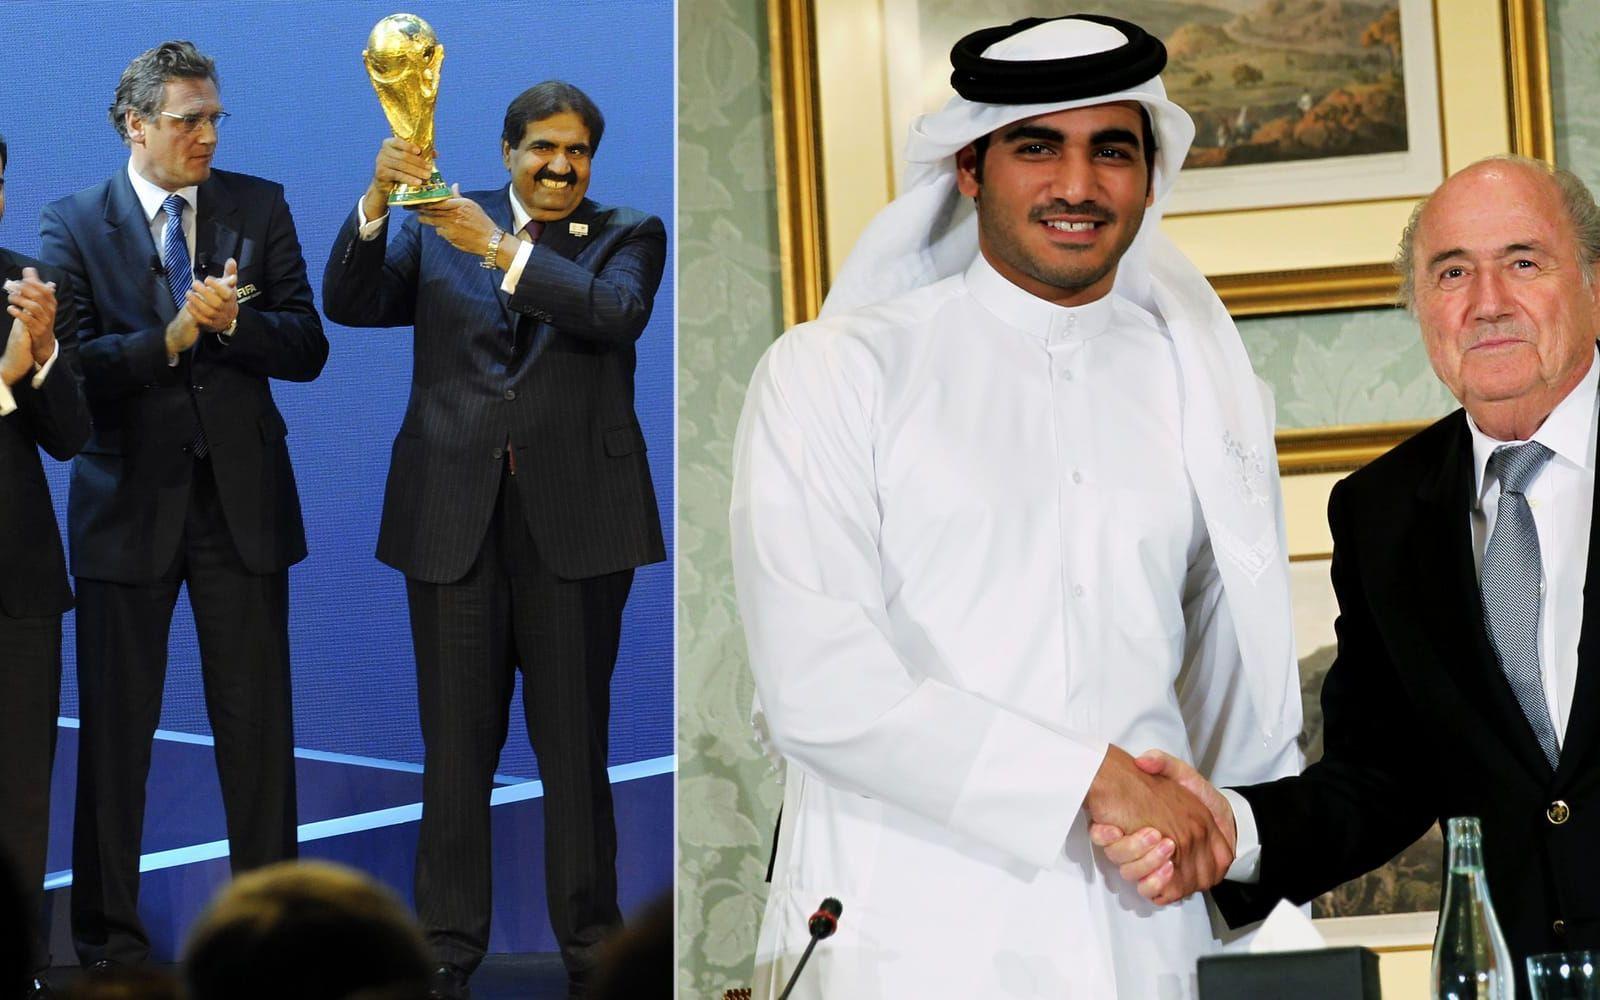 Qatars VM-värdskap är starkt ifrågasatt – nu kommer nya uppgifter om korruption inför ansökan. Bild: Bildbyrån.